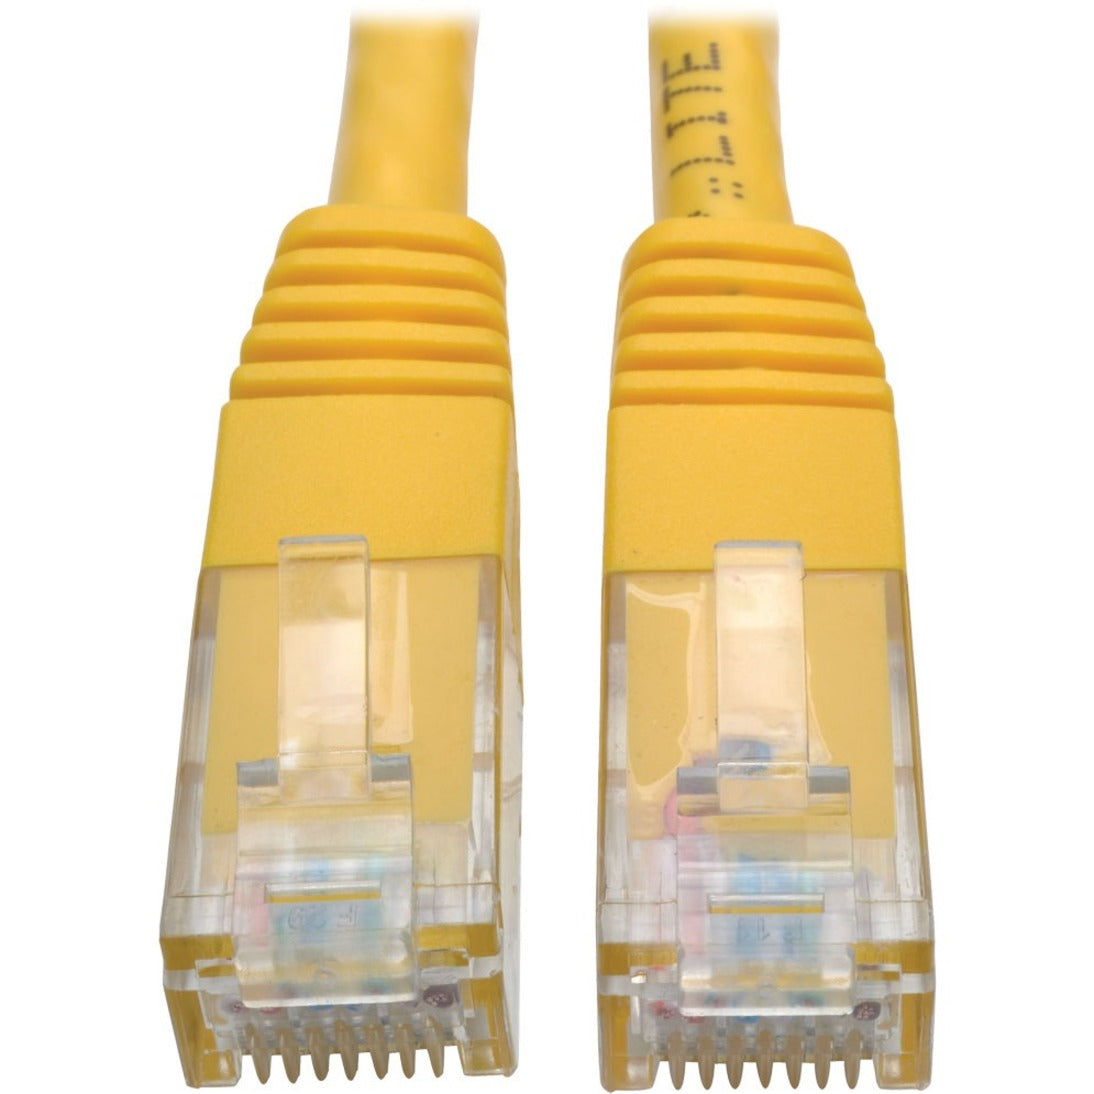 特级黄色三星N200-001-YW高级RJ-45网线，1英尺，1 Gbit/s数据传输速率  三星:N200-001-YW